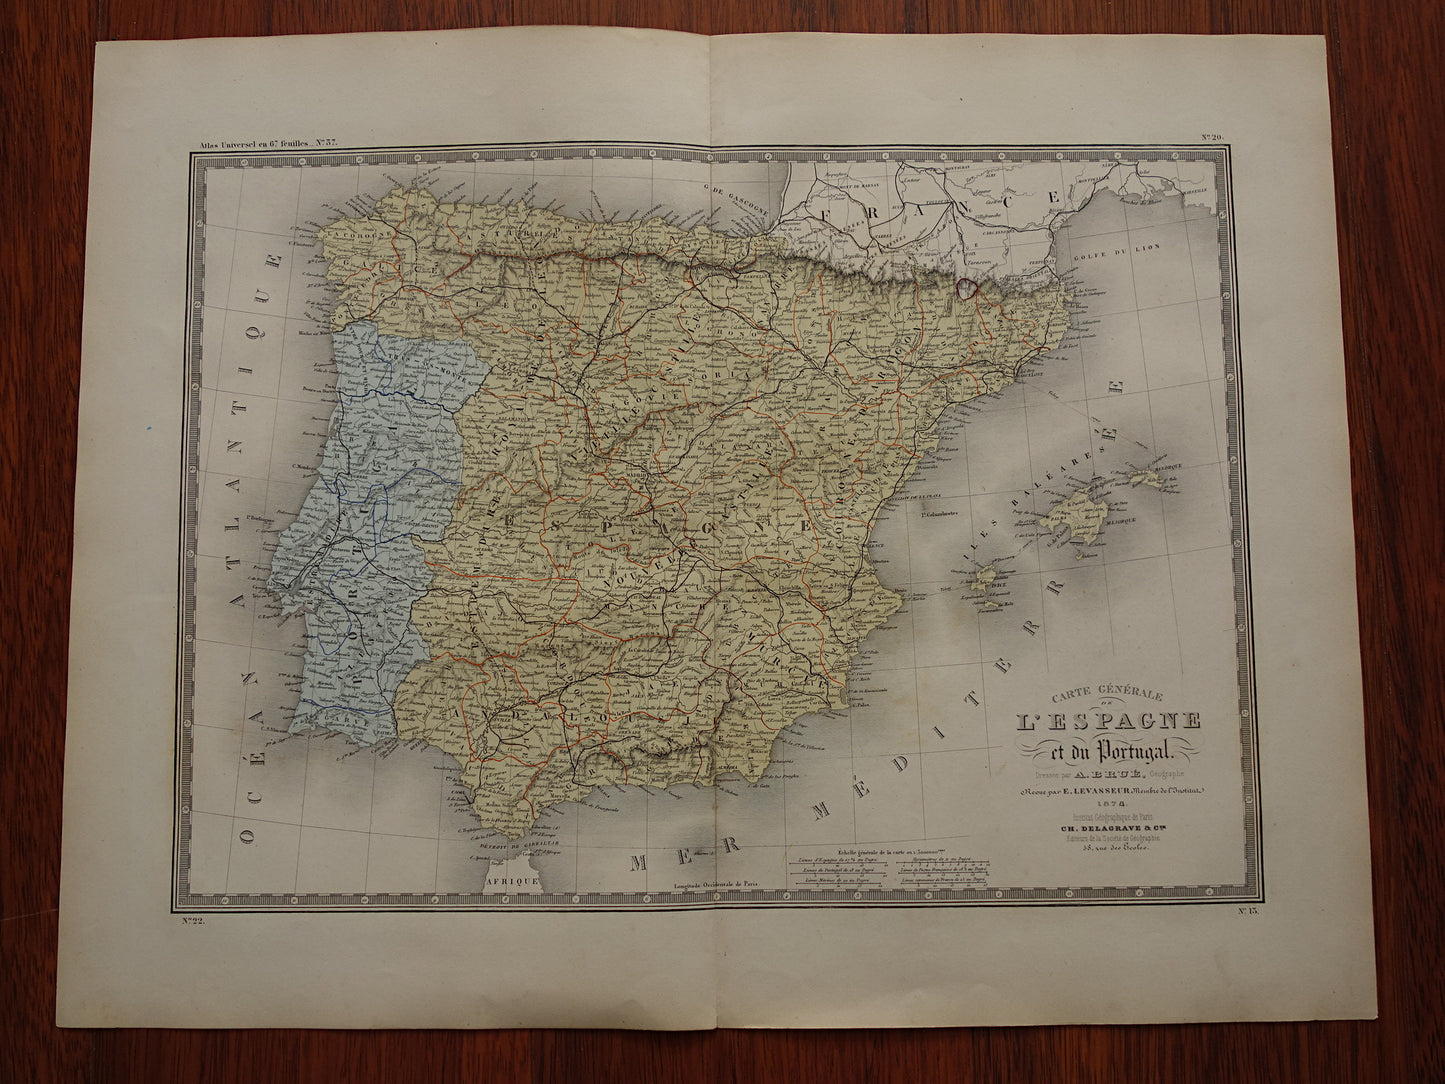 Oude kaart van Spanje en Portugal uit 1874 originele grote antieke landkaart Madrid Barcelona Lissabon vintage poster